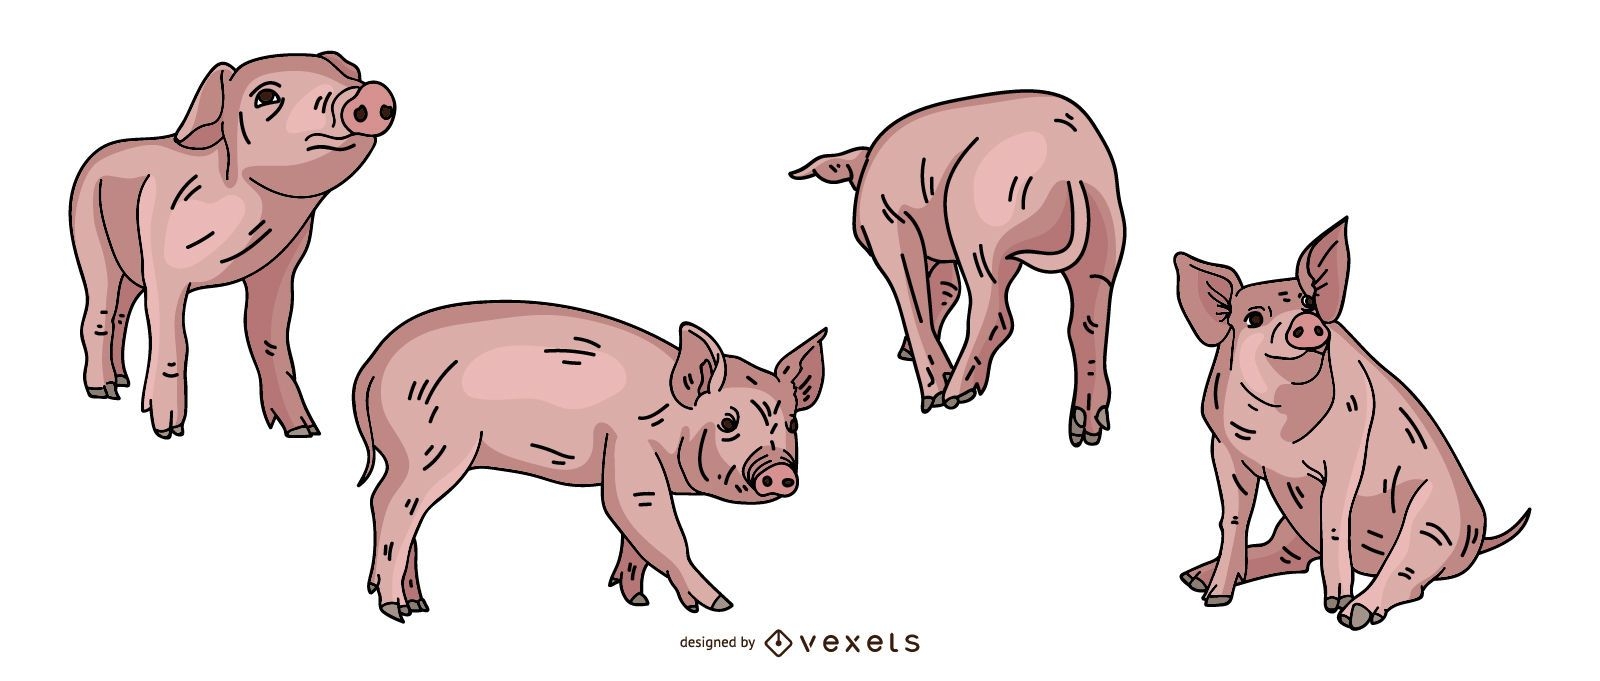 Pig Colored Illustration Design 